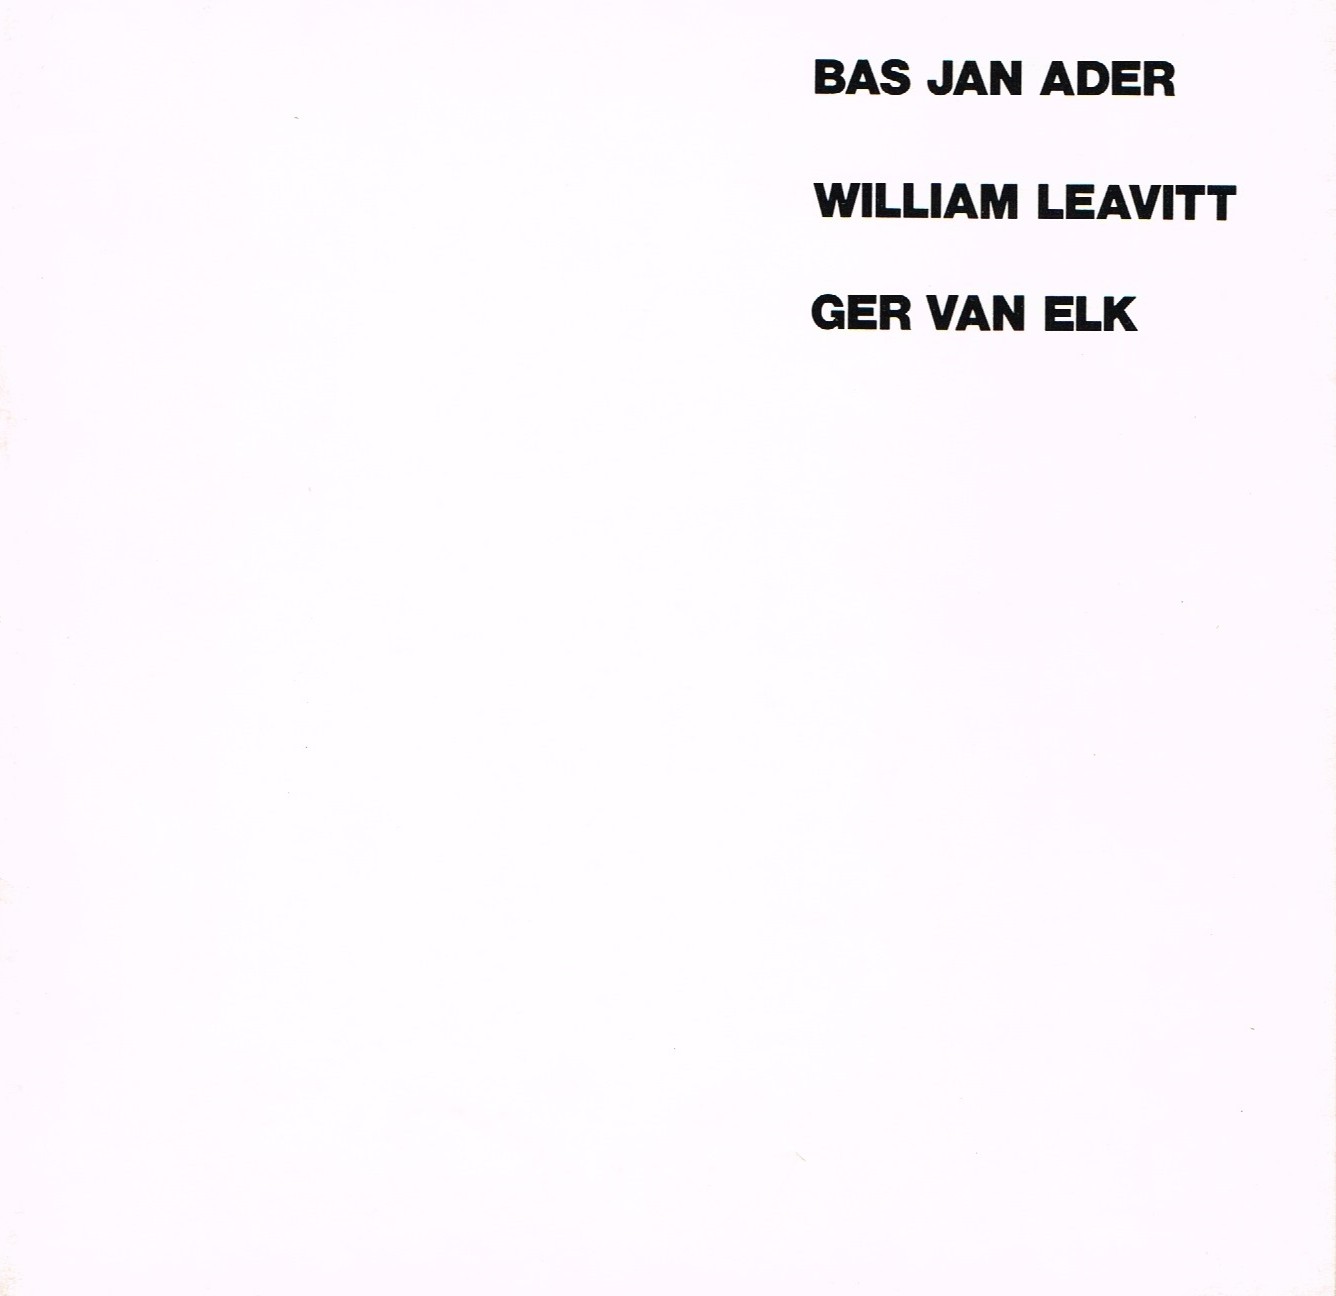 (ADER, BAS JAN) (LEAVITT, WILLIAM) (VAN ELK, GER). Winer, Helene, Bas Jan Ader, William Leavitt & Ger Van Elk - BAS JAN ADER / WILLIAM LEAVITT / GER VAN ELK